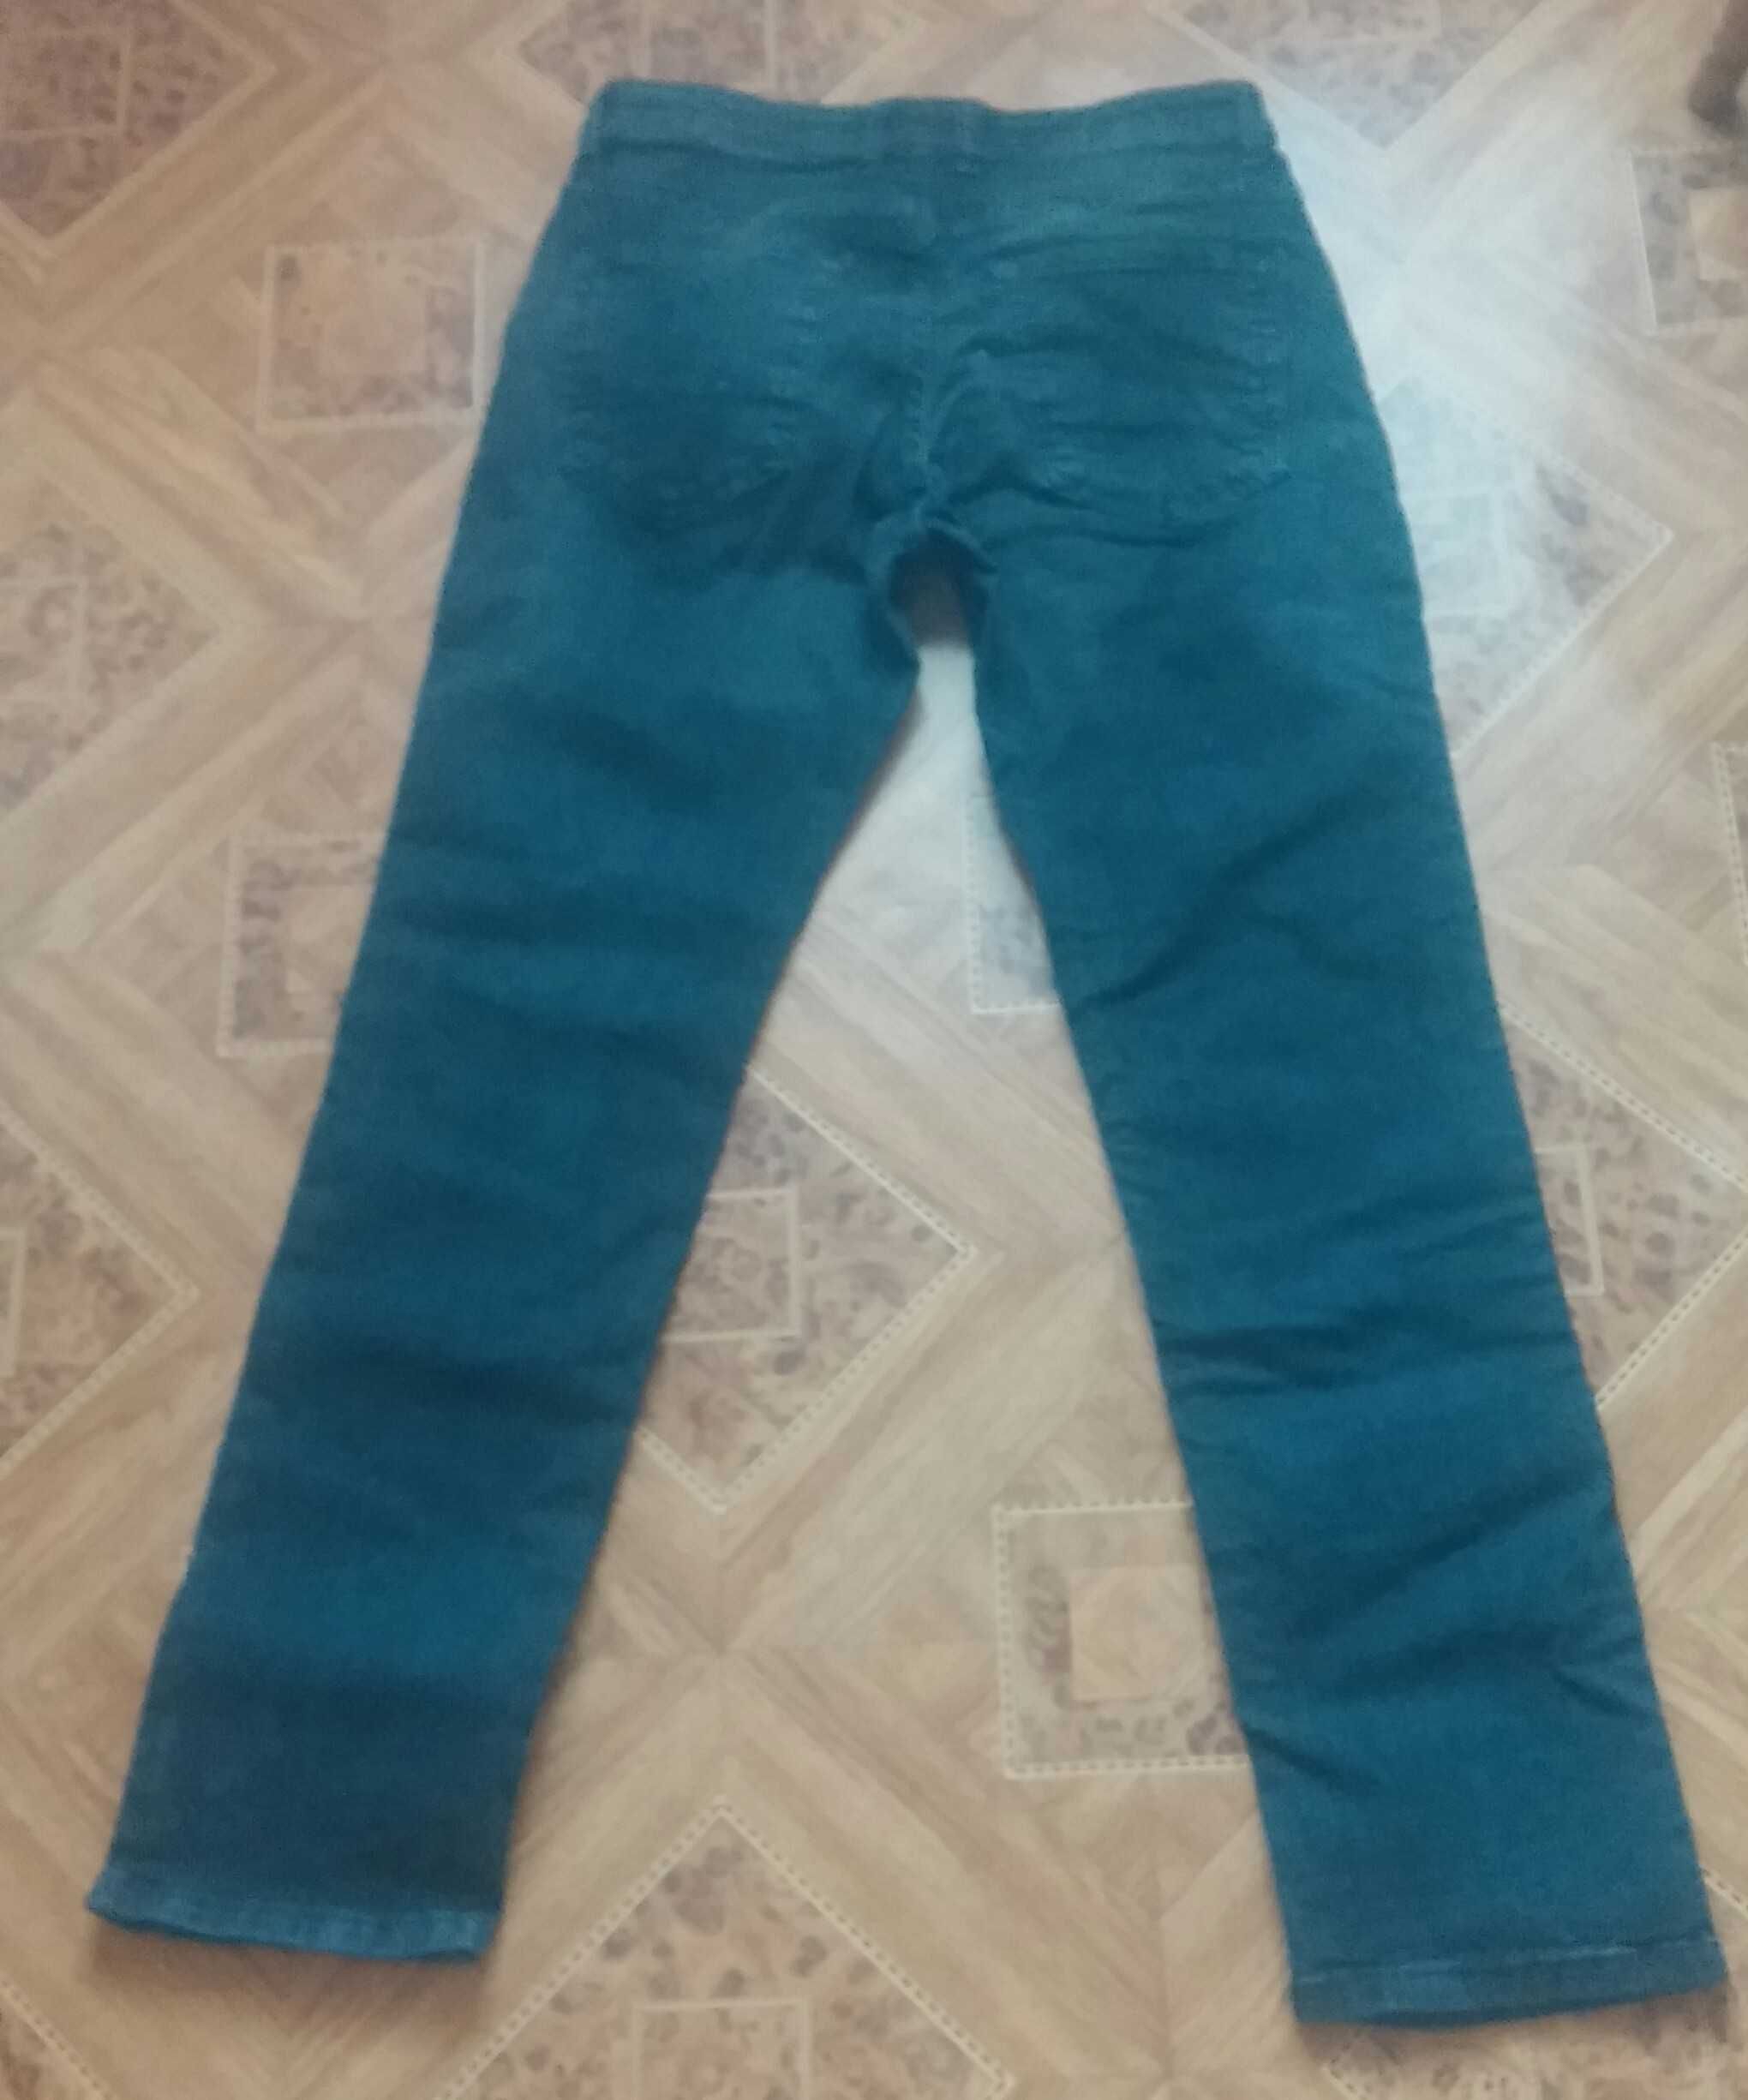 Новые джинсы на талию 76-78 см. Размер М - L (44-46). Только Харьков.